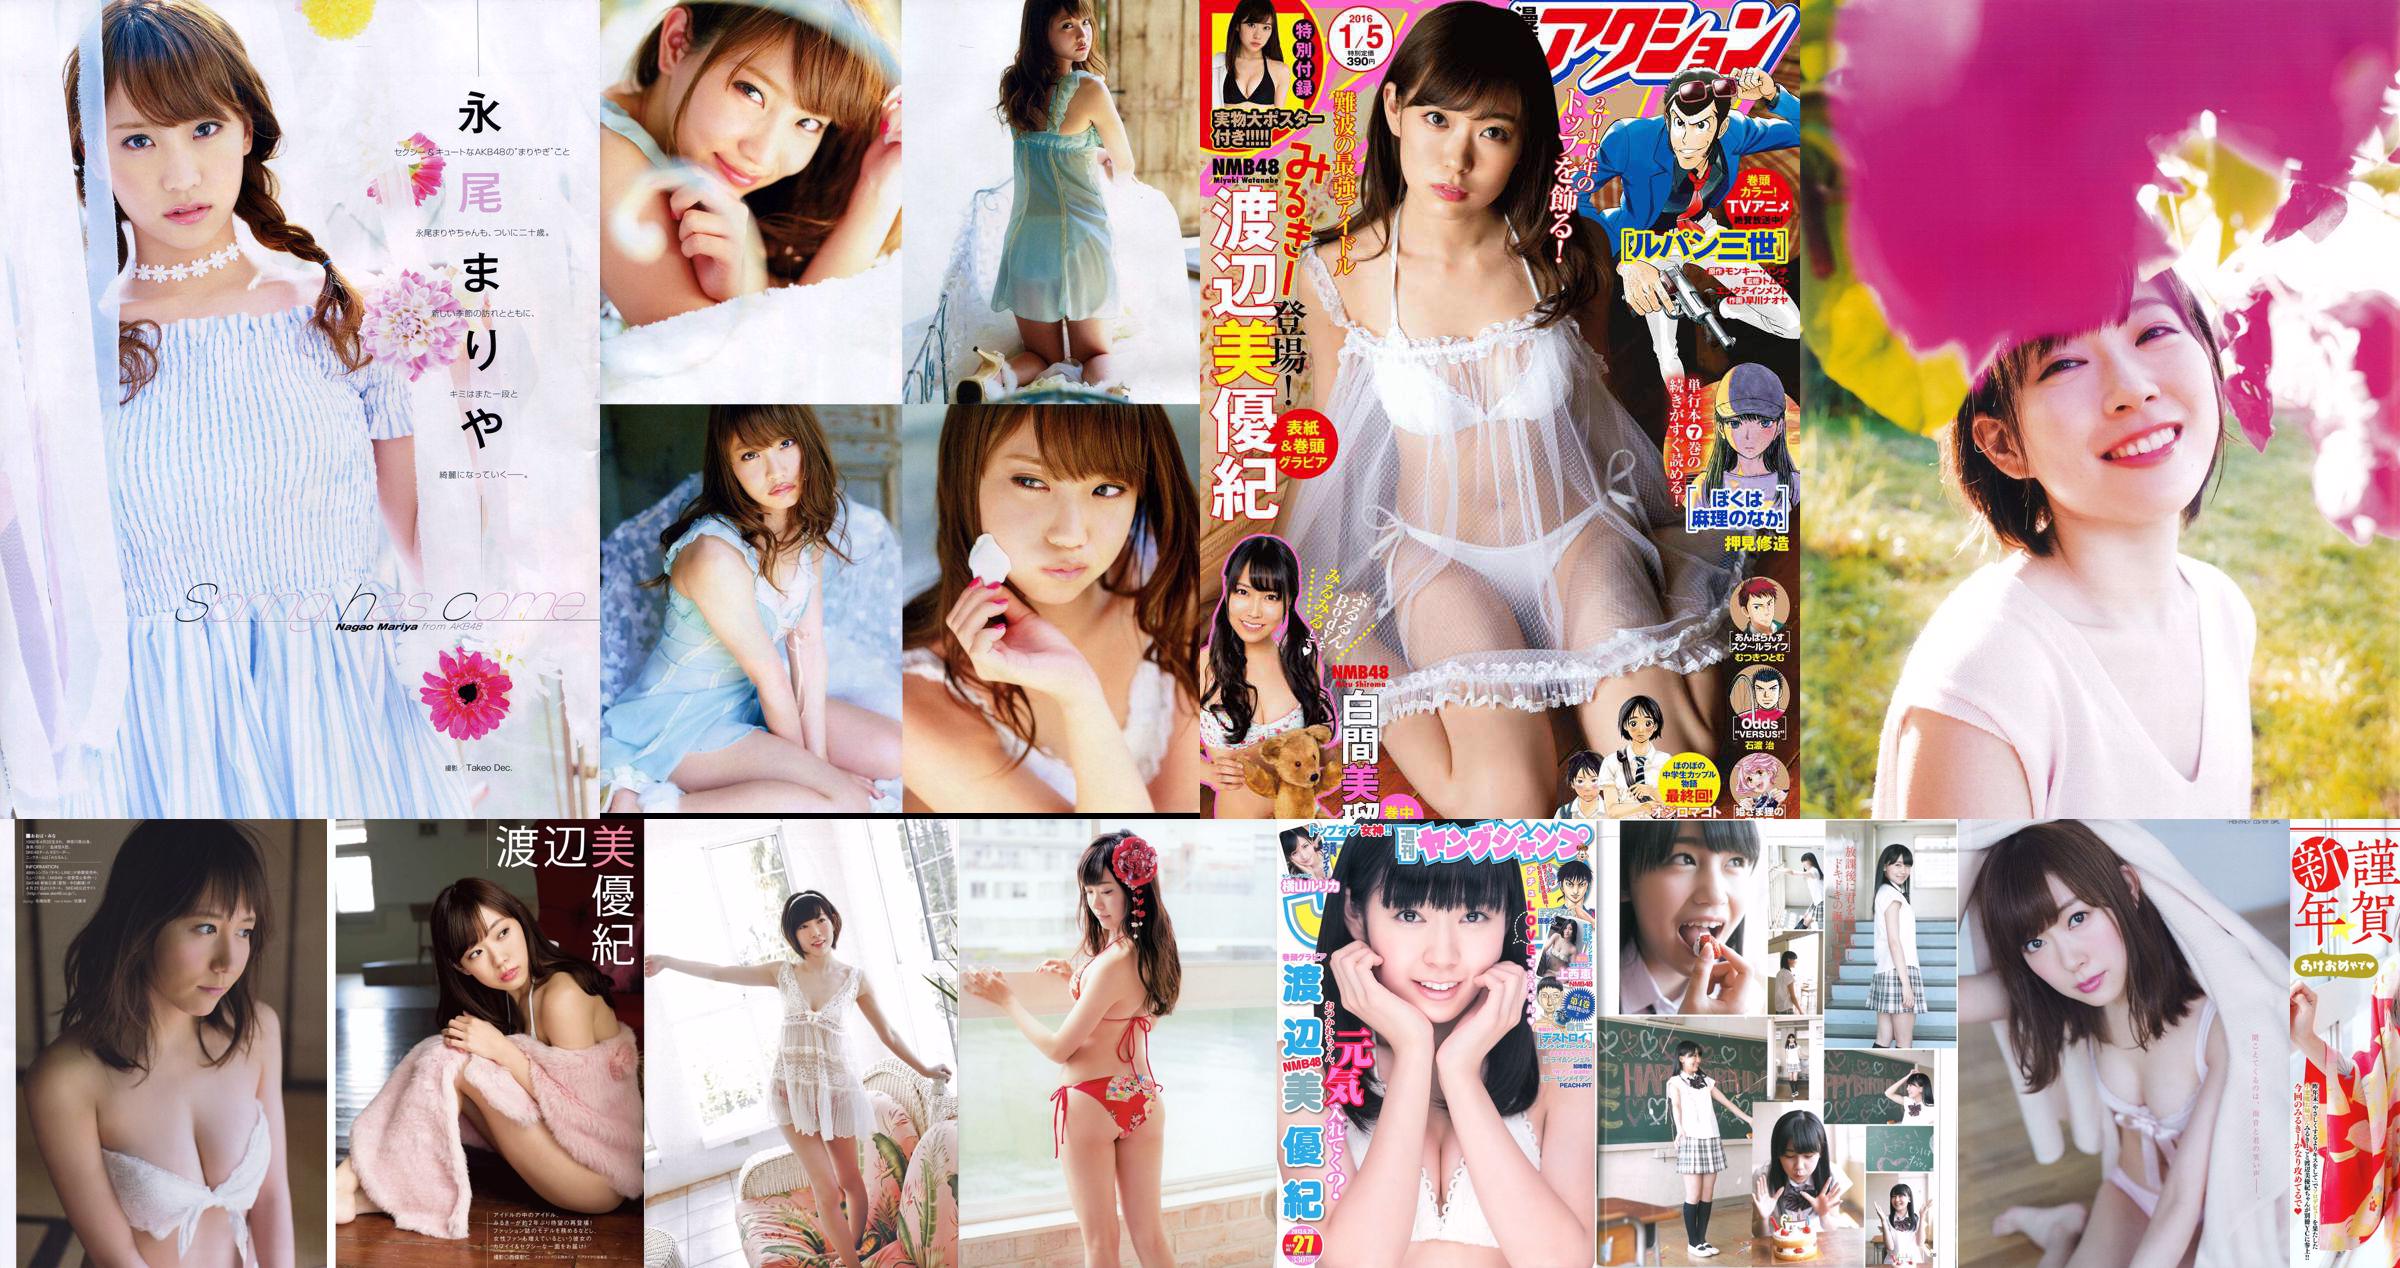 Miyuki Watanabe Người Uemoga nhất [Động vật trẻ] 2012 Tạp chí ảnh số 24 No.8aa261 Trang 5